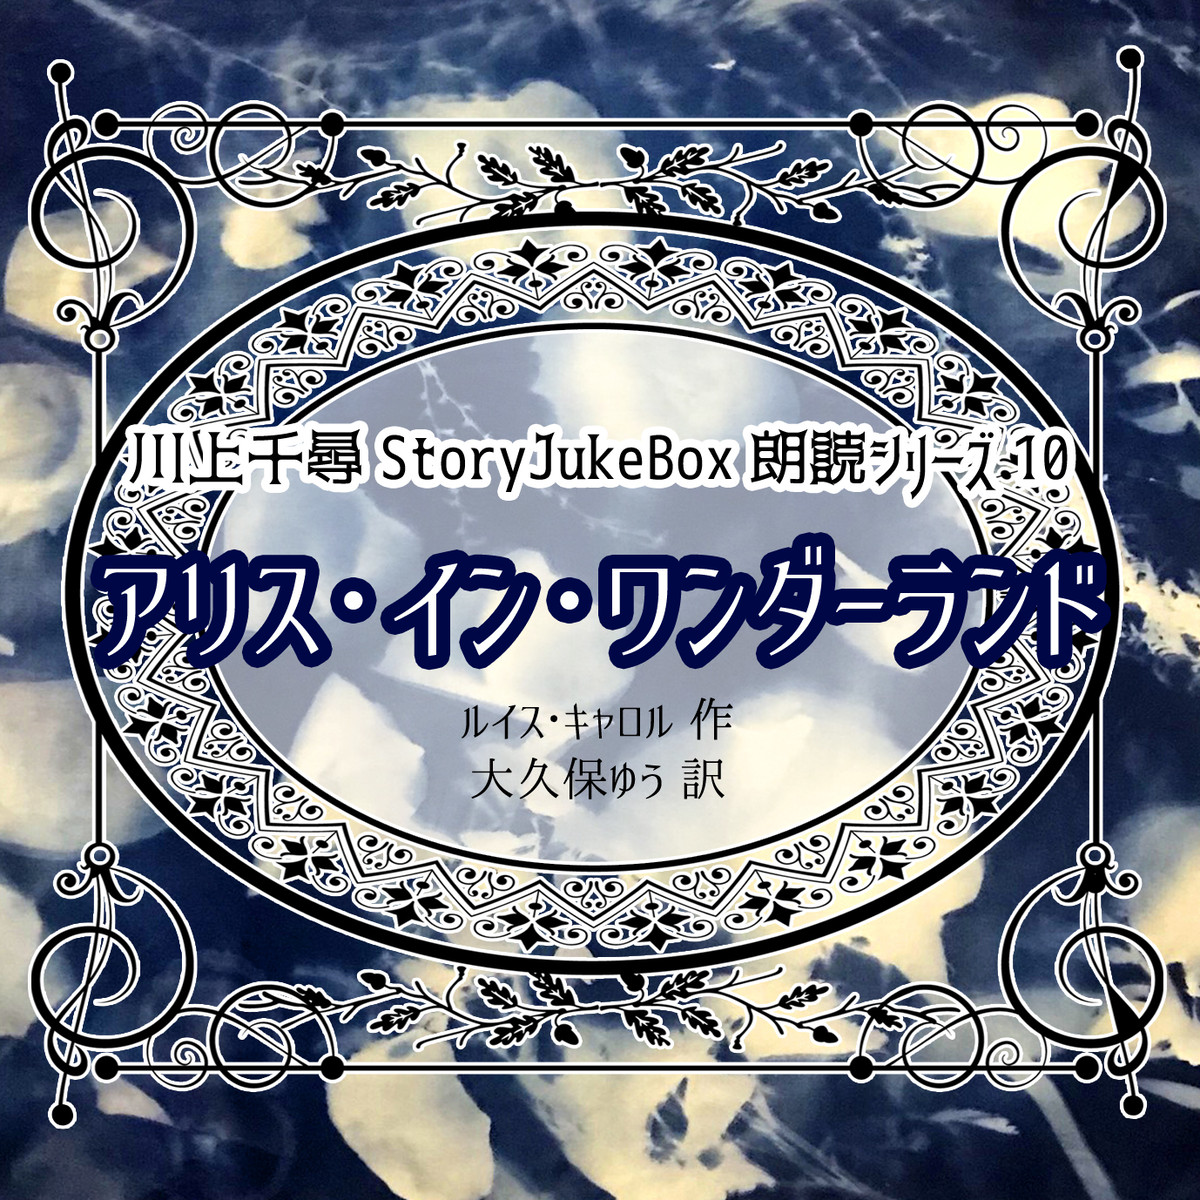 朗読シリーズ10 アリス イン ワンダーランド Storyjukebox Onlineshop